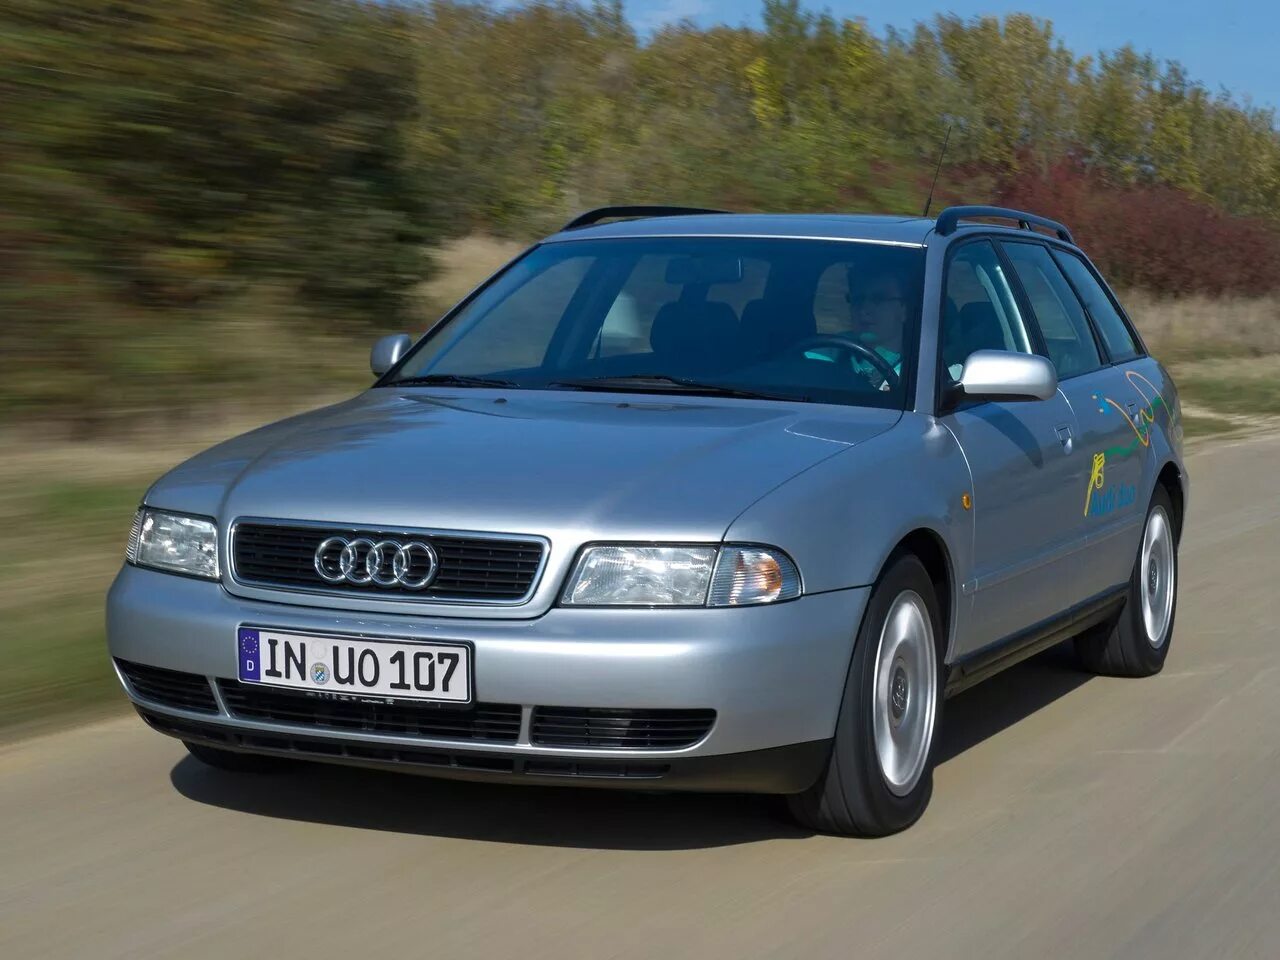 Ауди б5 универсал купить. Audi a4 b5 универсал. Audi a4 b5 2000. Audi a4 b5 1994. Audi a4 b5 1996.